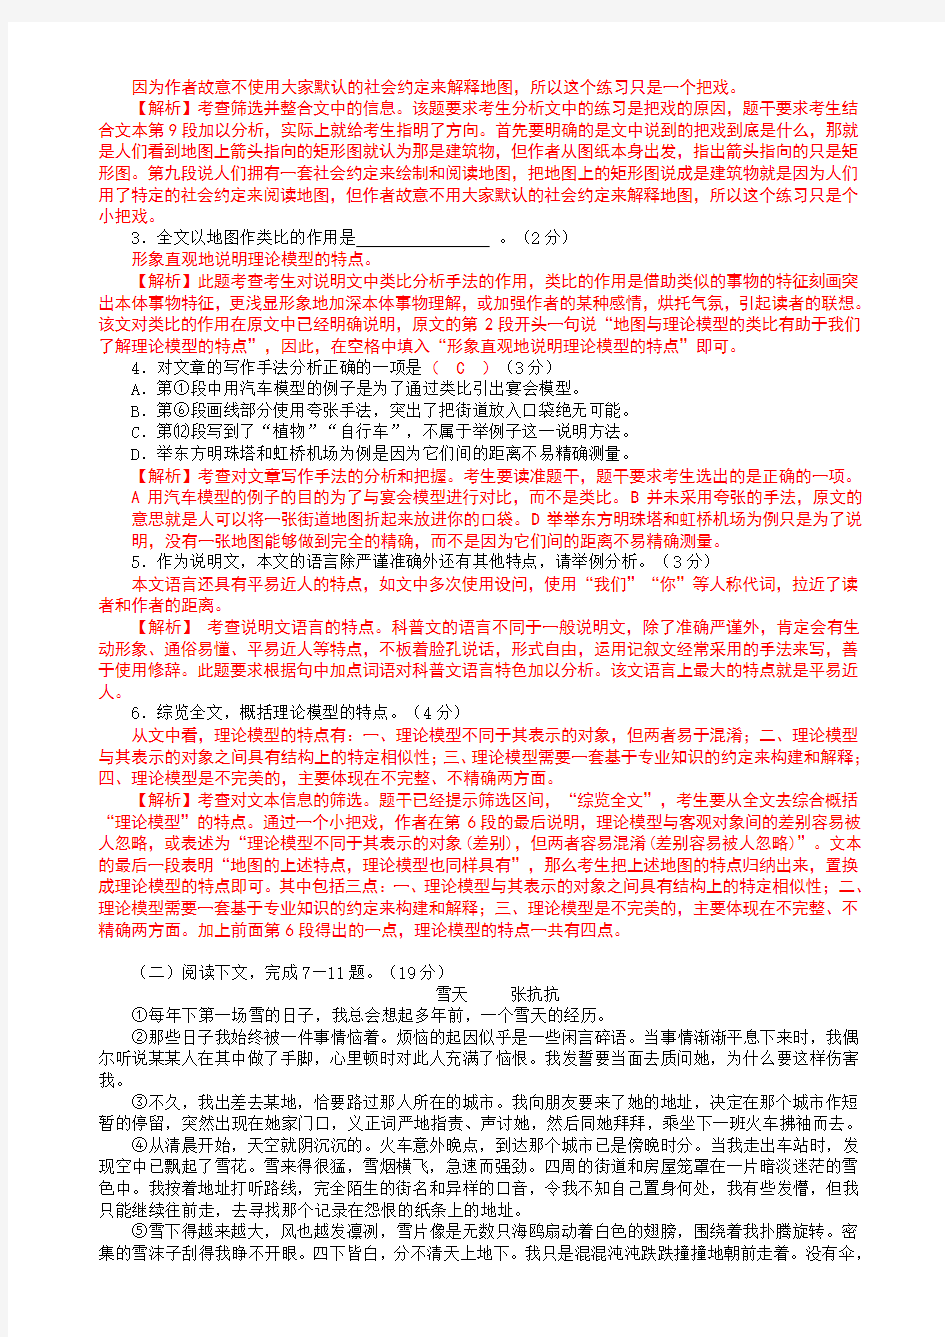 2015年高考上海卷语文试题逐题详解(教师精校版)